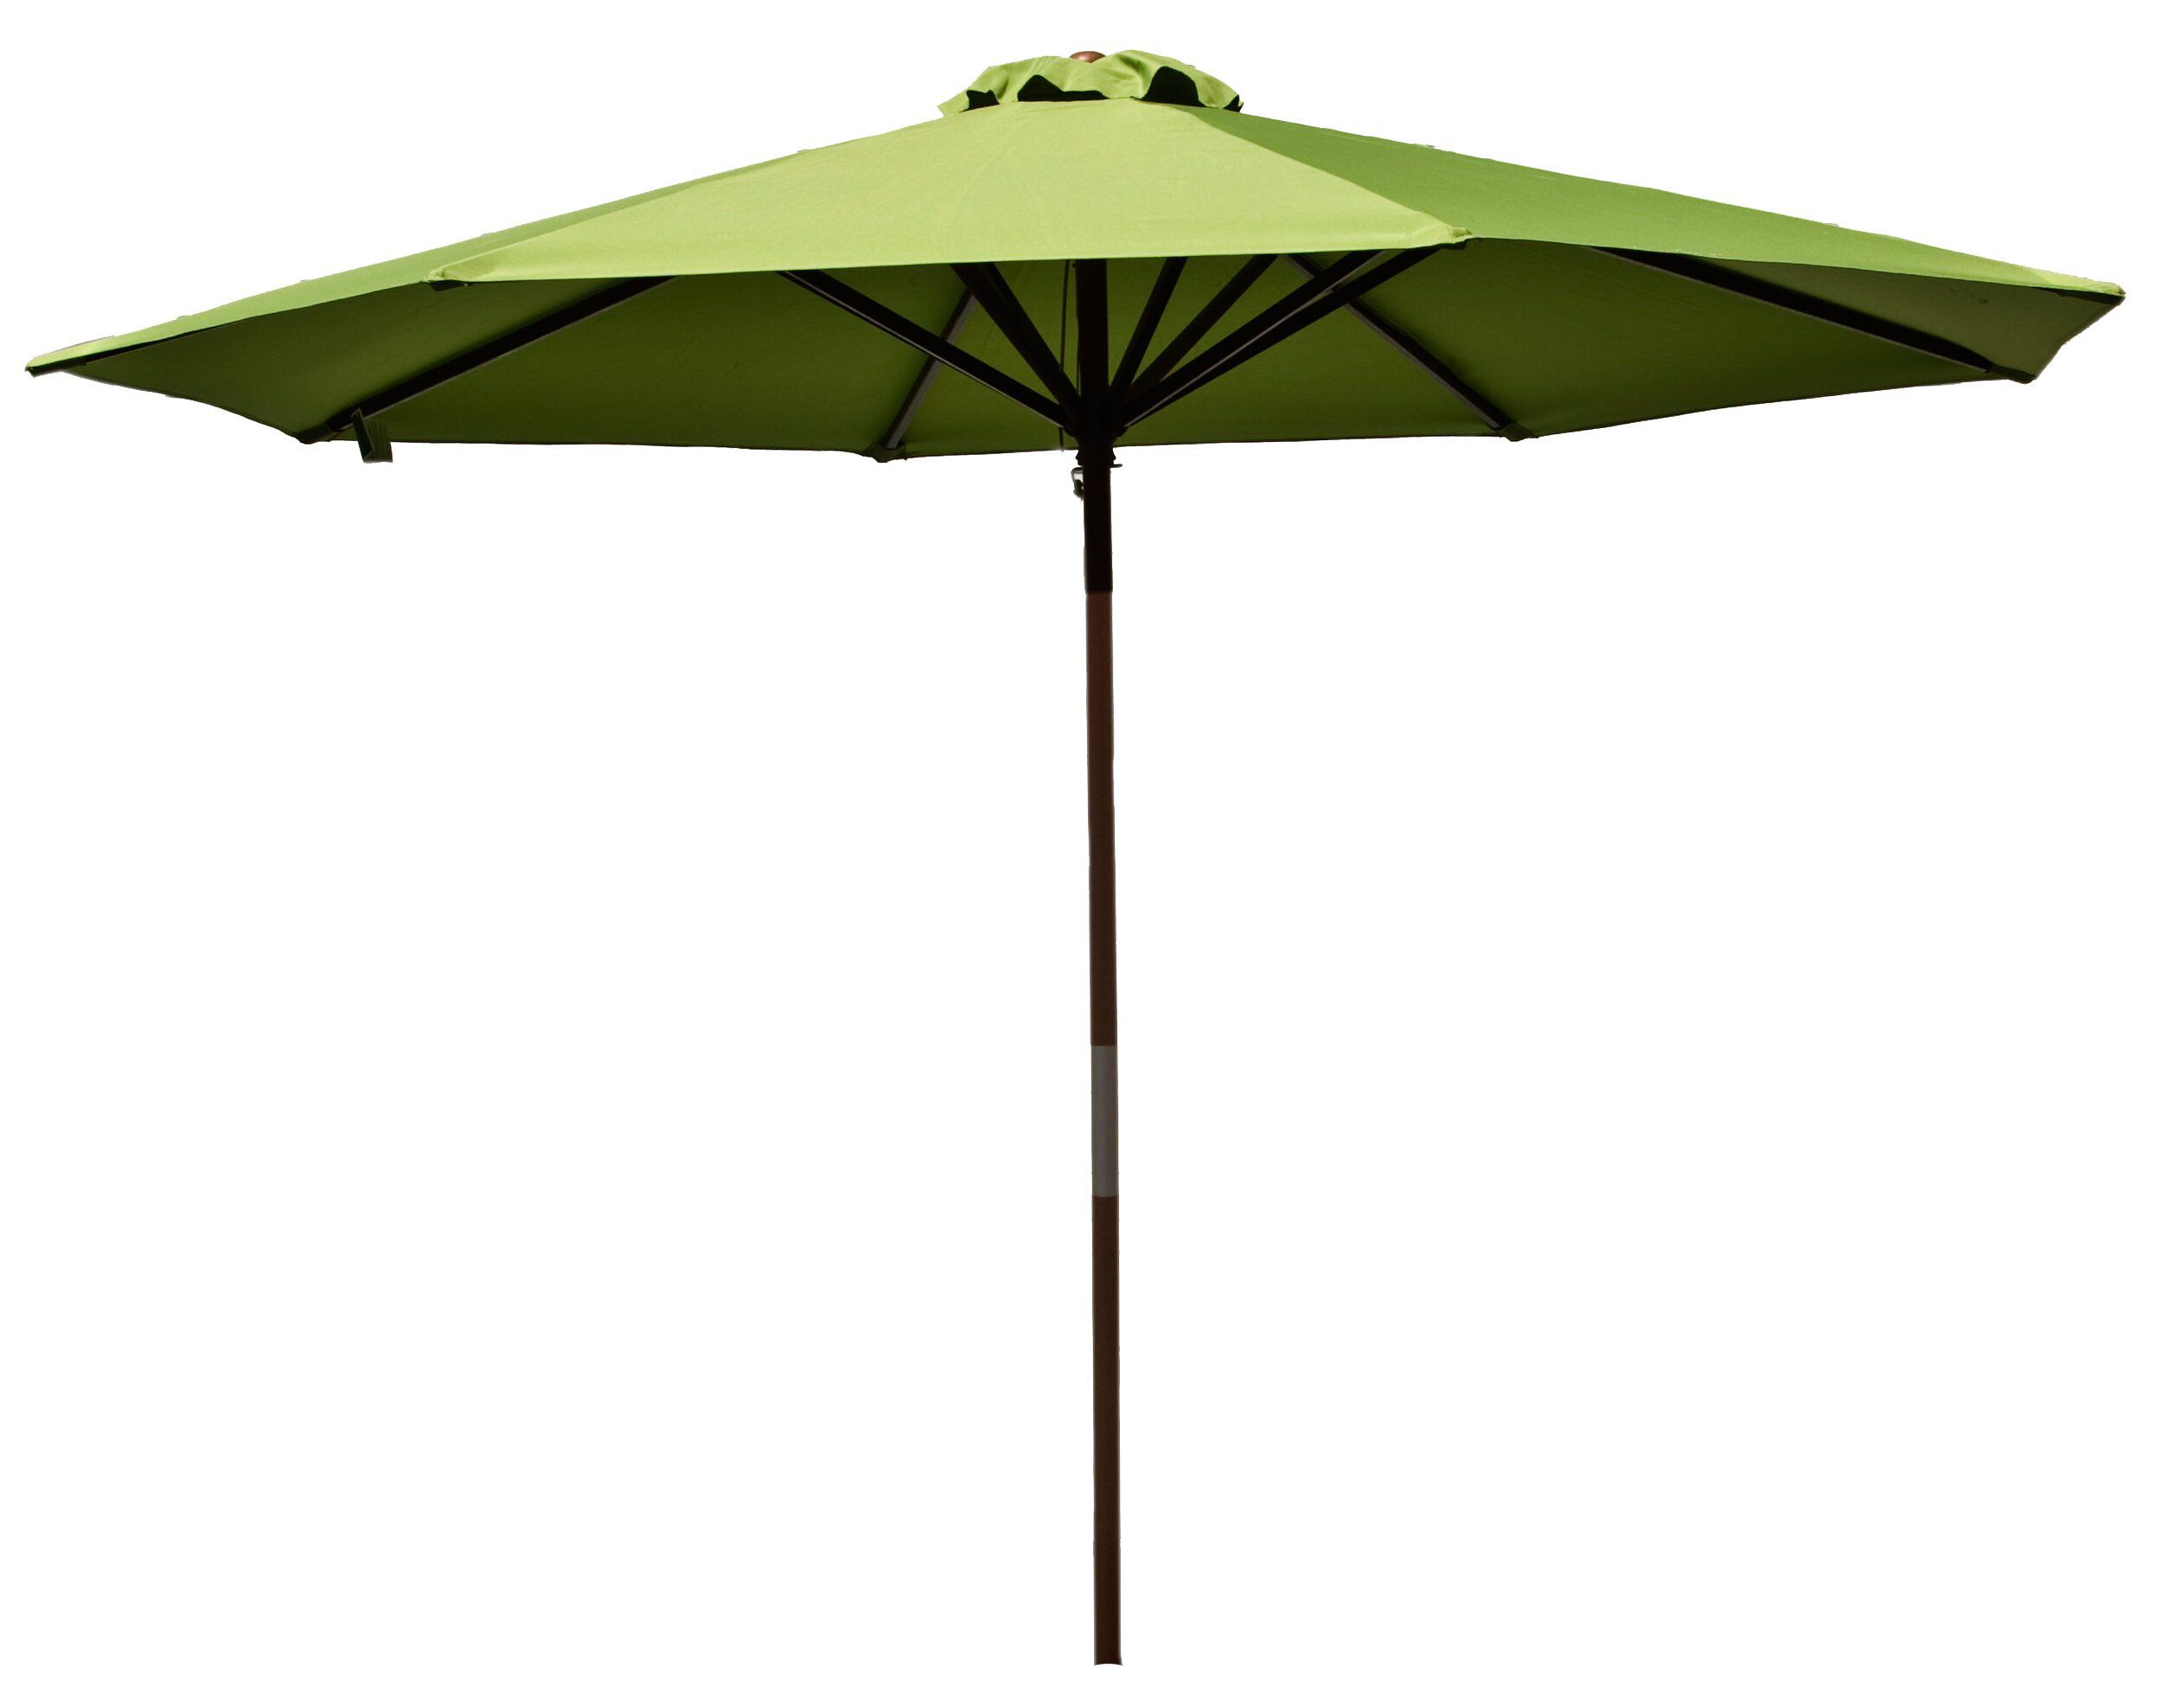 Parasol 9' Market Umbrella